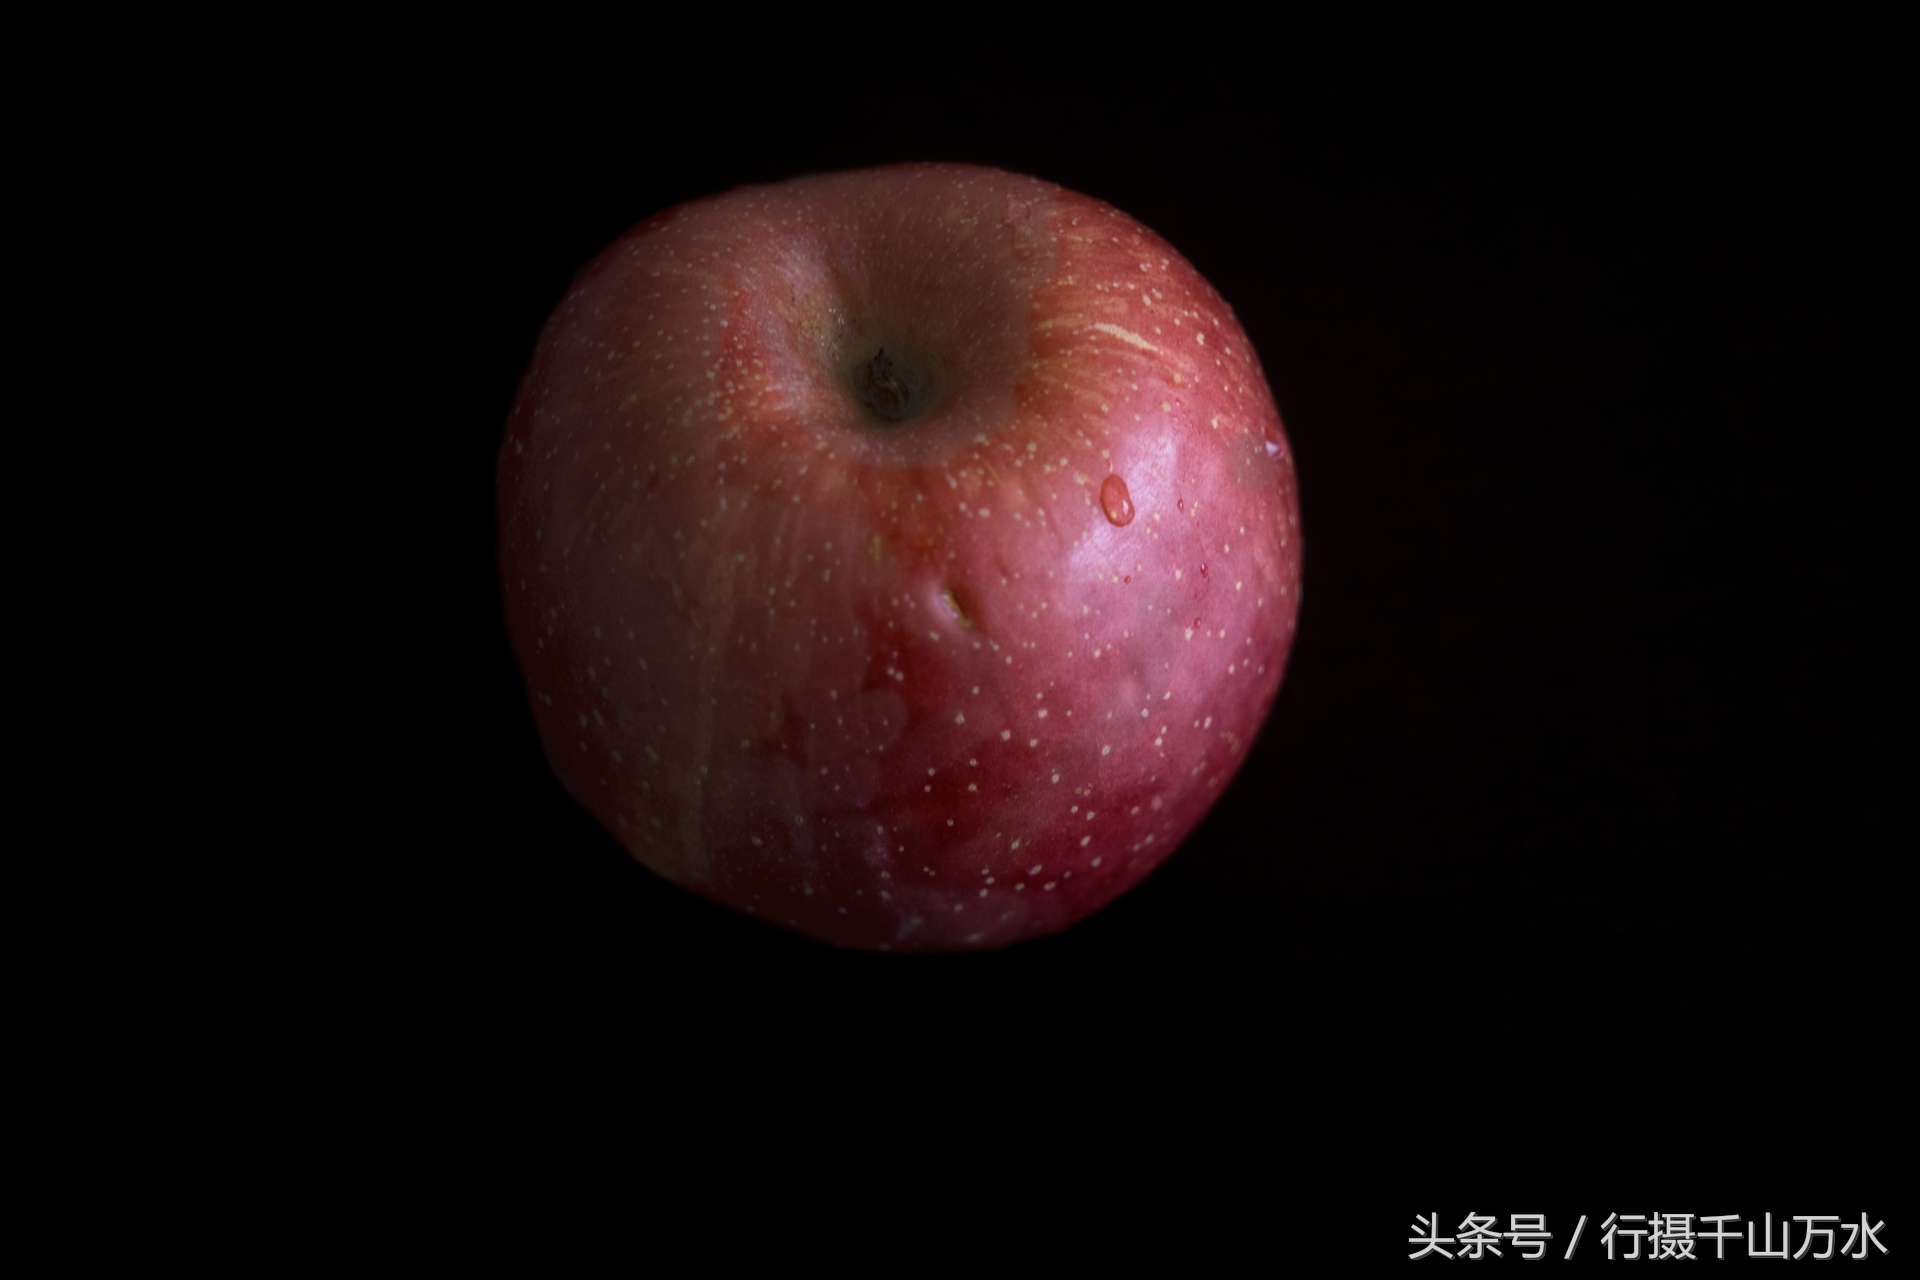 摄影技巧分享:这种纯黑的苹果怎么拍教你两招就能学会